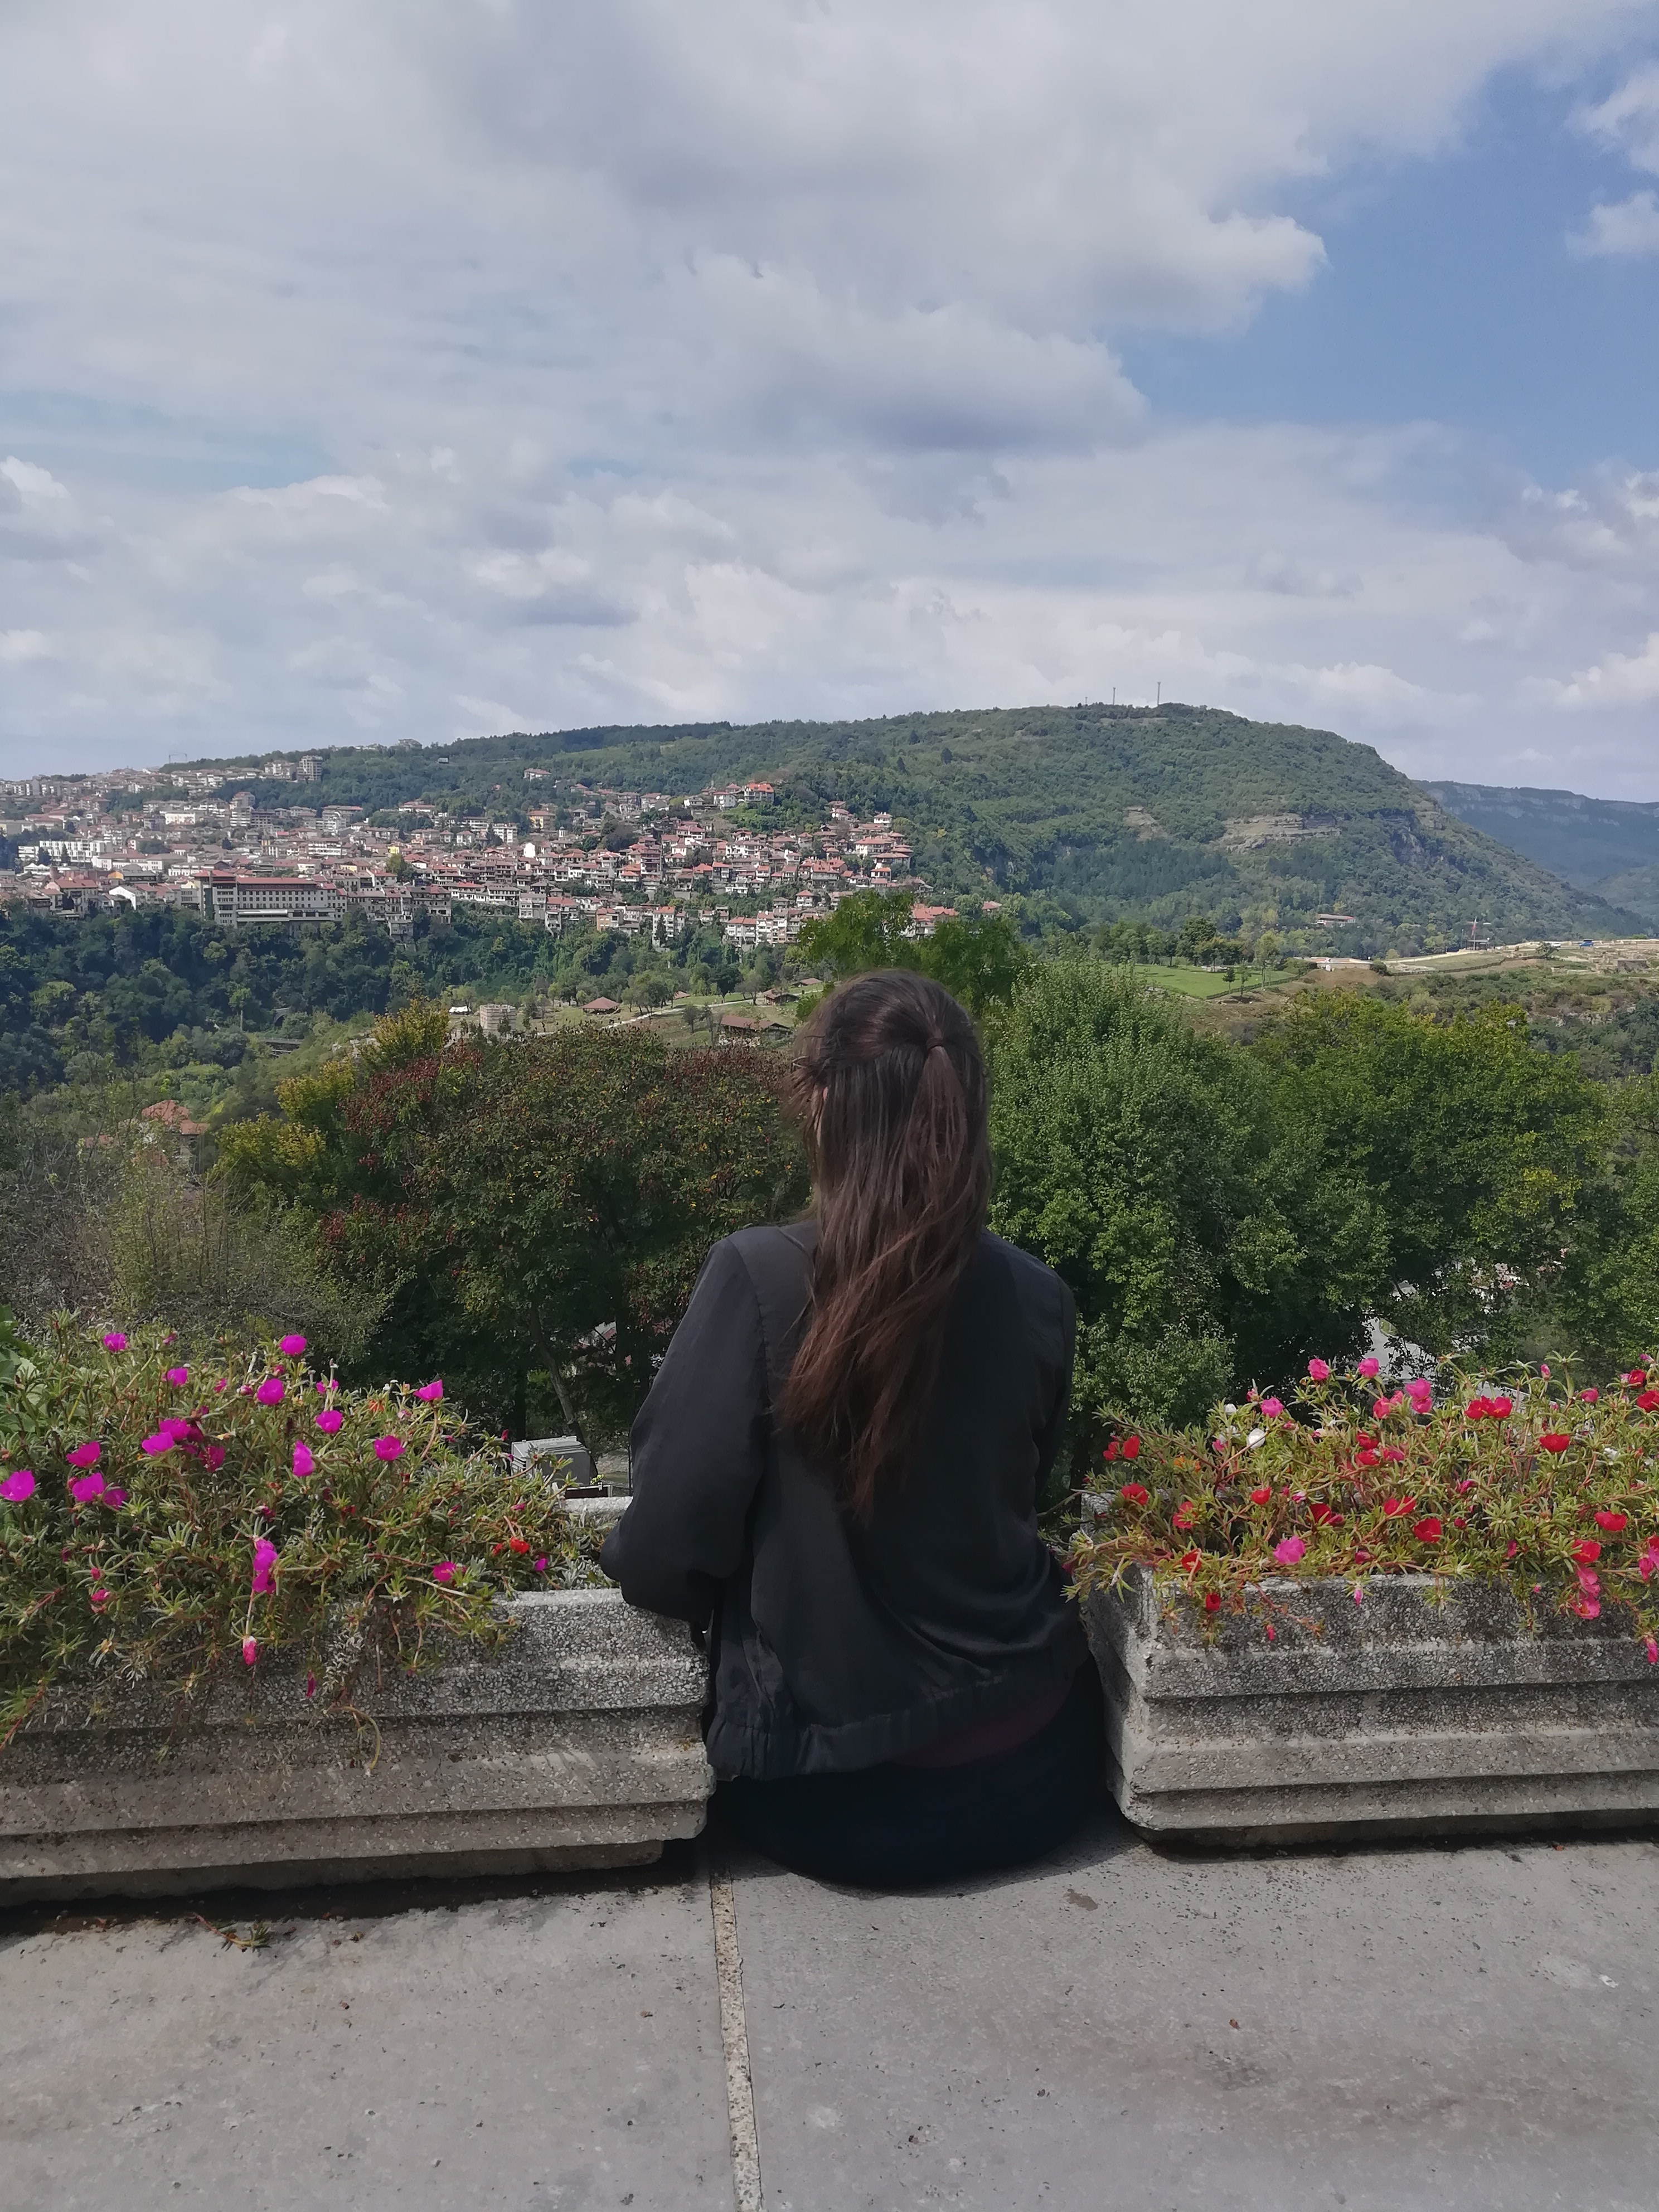 Foto: Ein Frau sitzt mit dem Rücken zur Kamera am Rand eines Hügelplattform und schaut über die hügelige Landschaft in der Ferne.